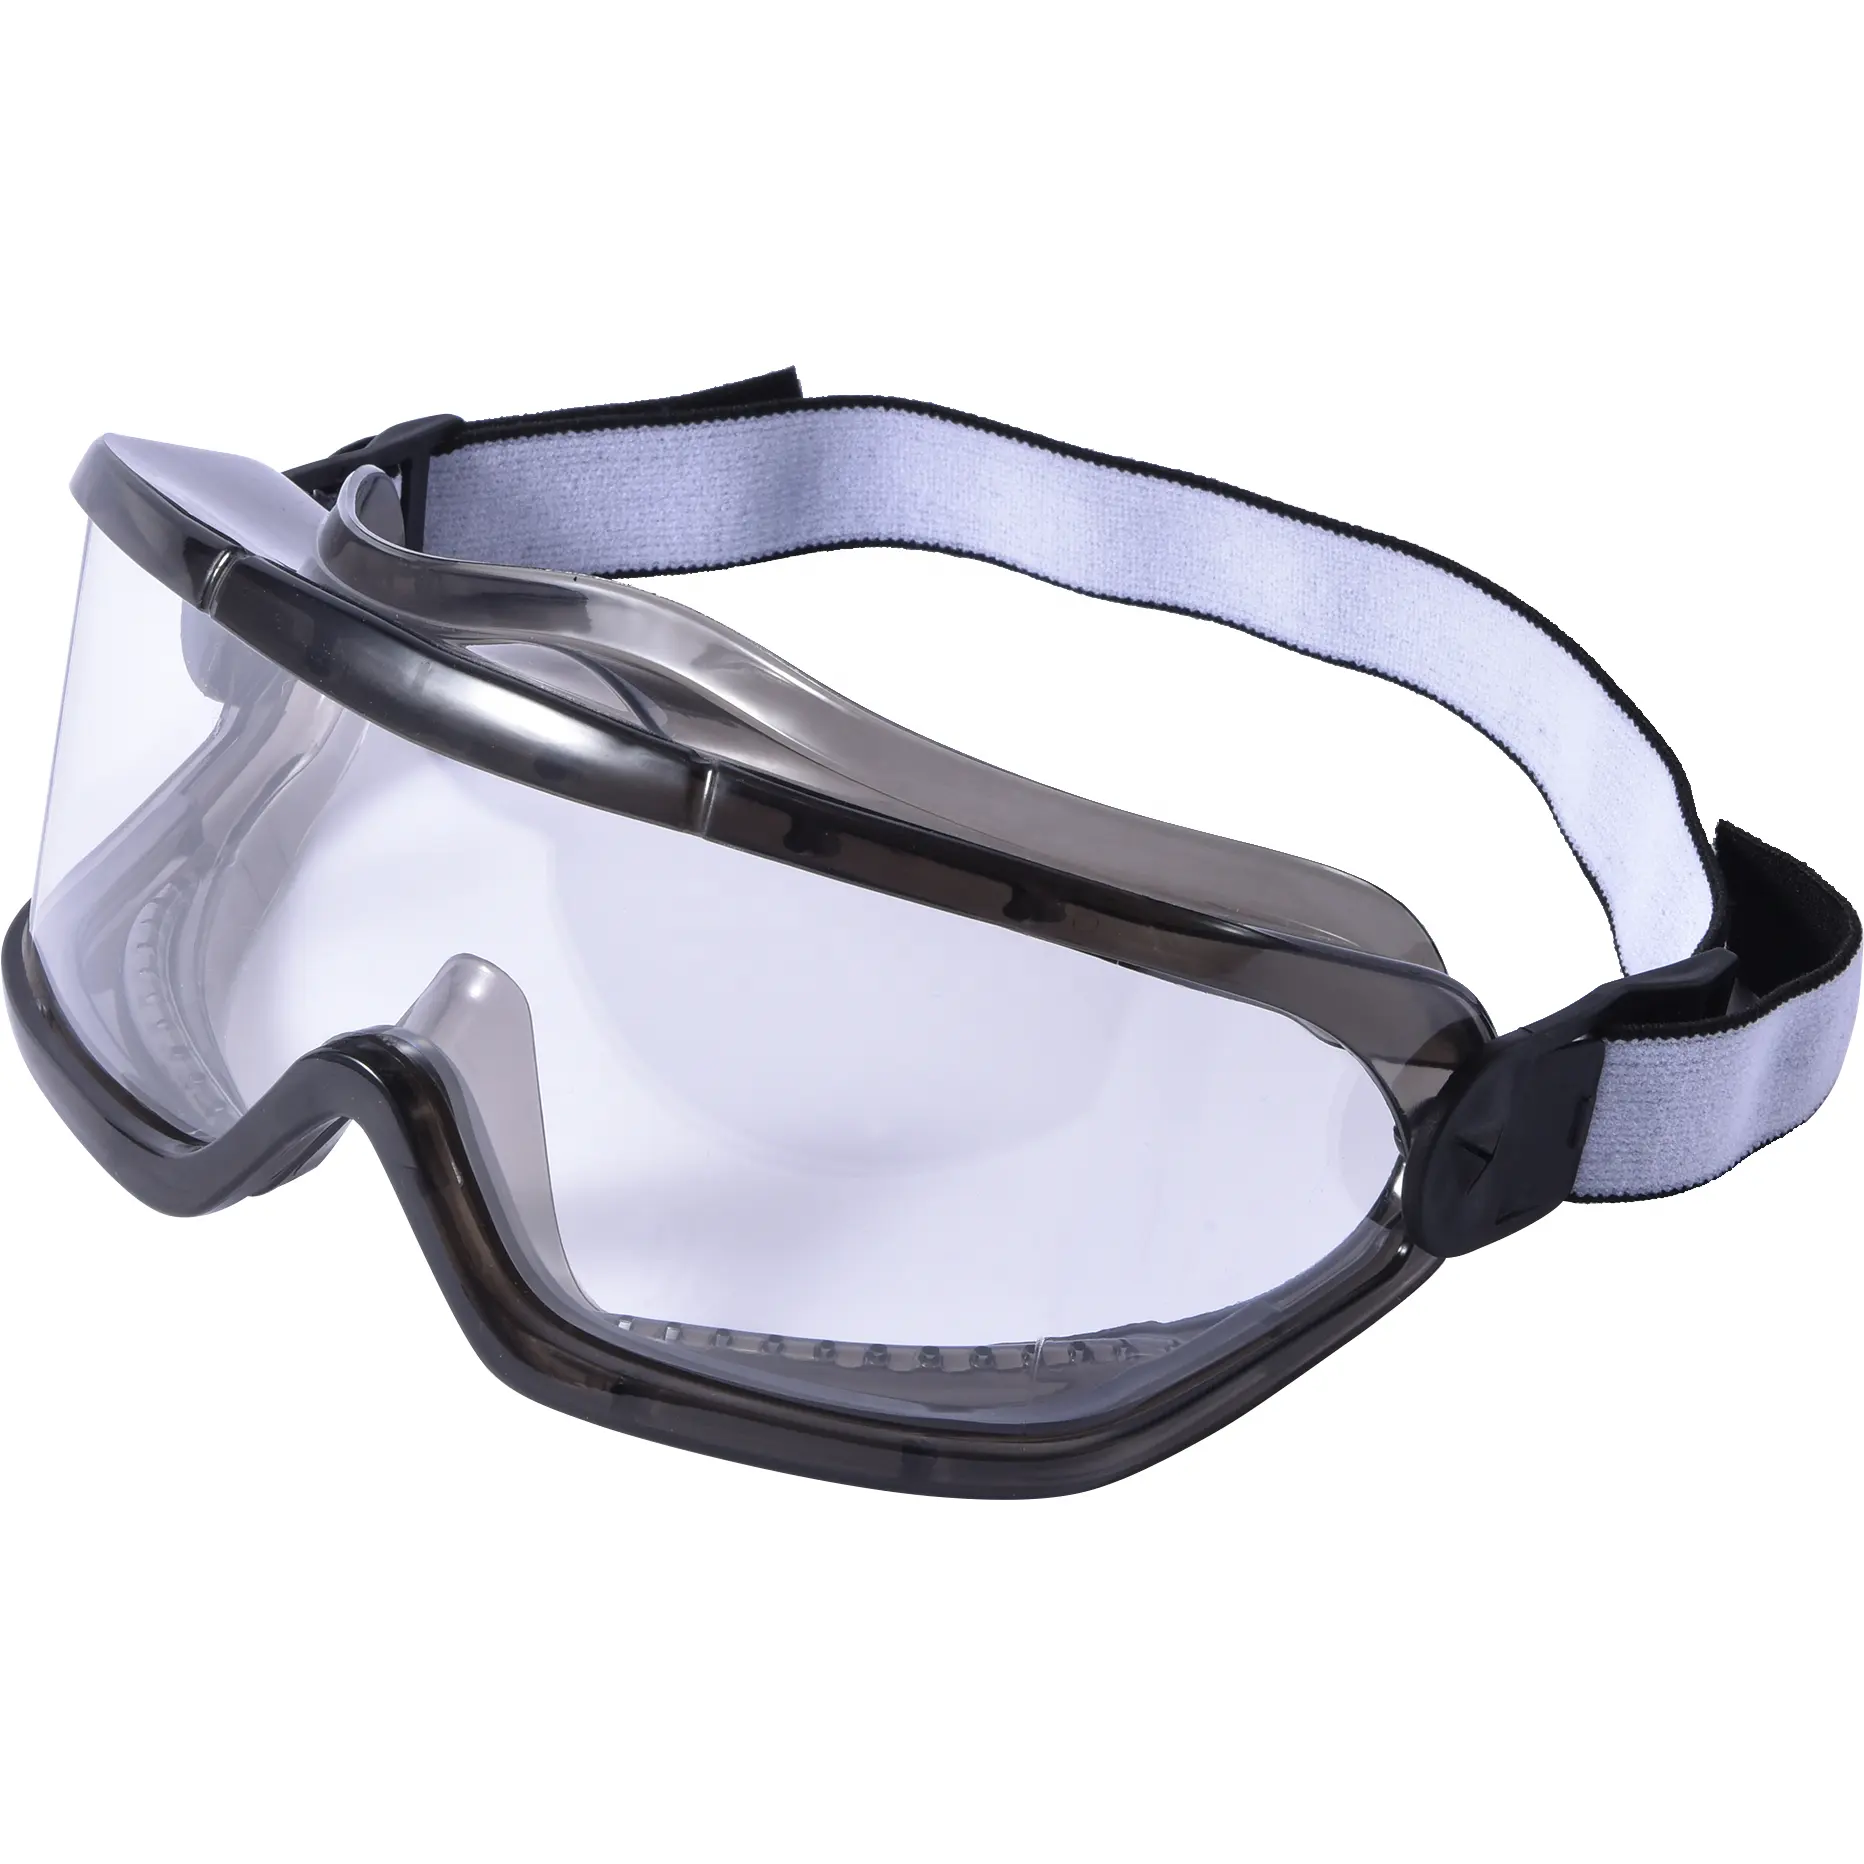 نظارات السلامة العالمية الواقية من العمل الشفافة YS-G046 نظارات السلامة التي توفر رؤية واسعة وعدسات واضحة تمنح الرؤية الكاملة